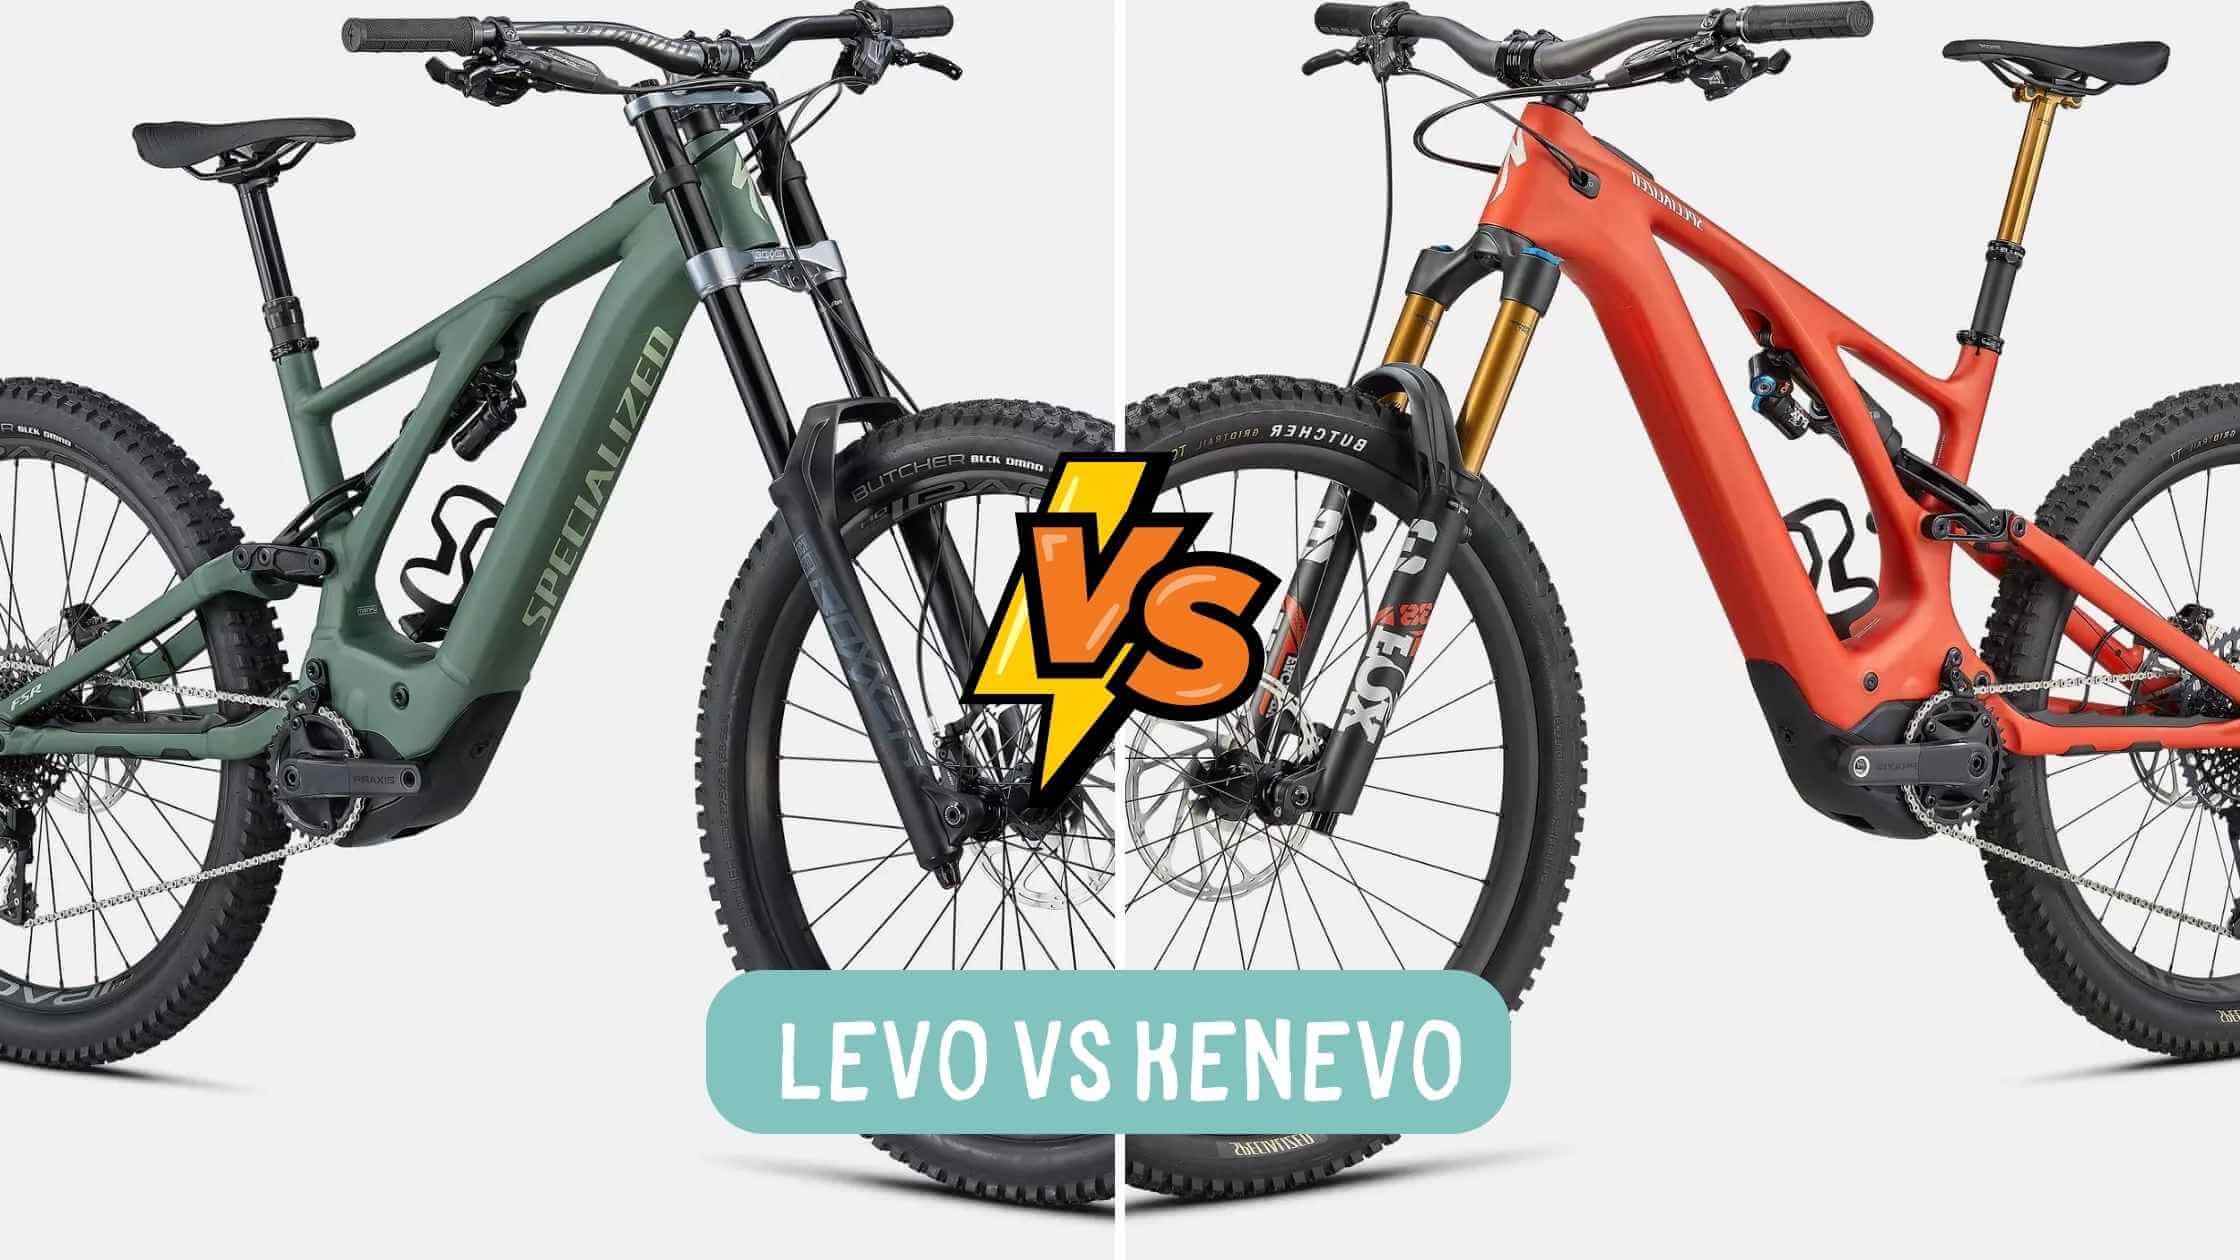 Levo vs Kenevo